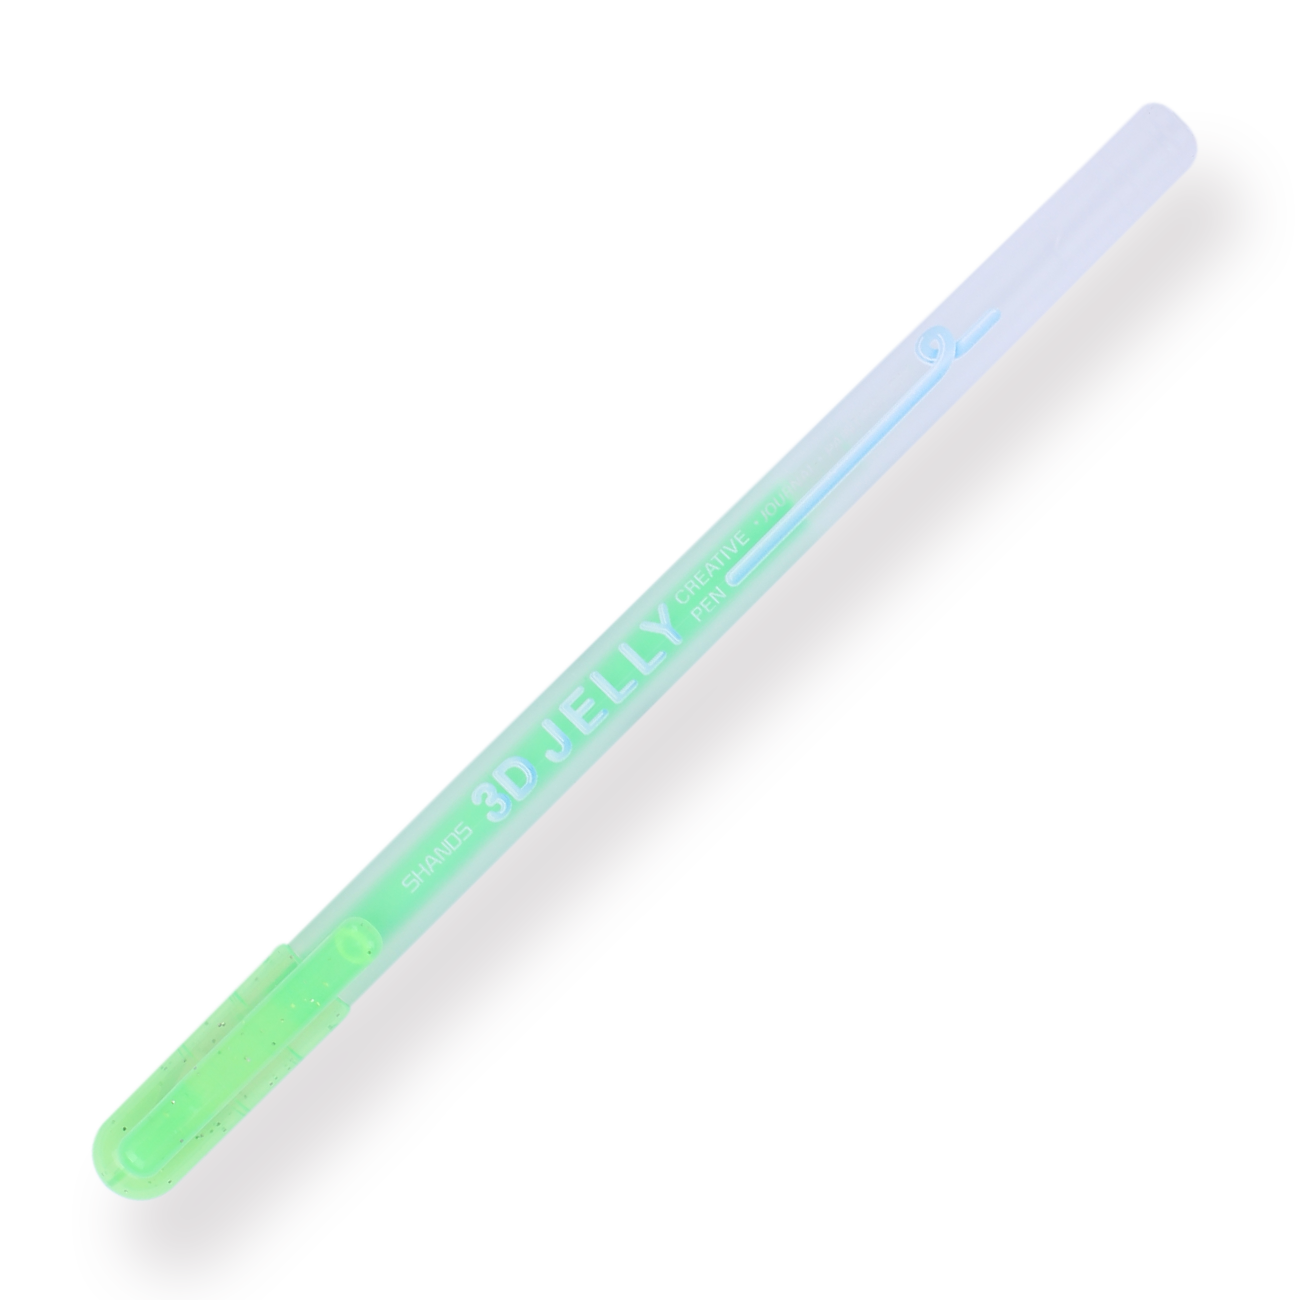 RJDJ 3D Jelly Pen, 6/12 Colors Candy Color Gel Ink Pen, 3D Glossy Jelly  Pens, 3D Colorful Jelly Pen Set, Colored Gel Pen Marker Ink Pens for DIY